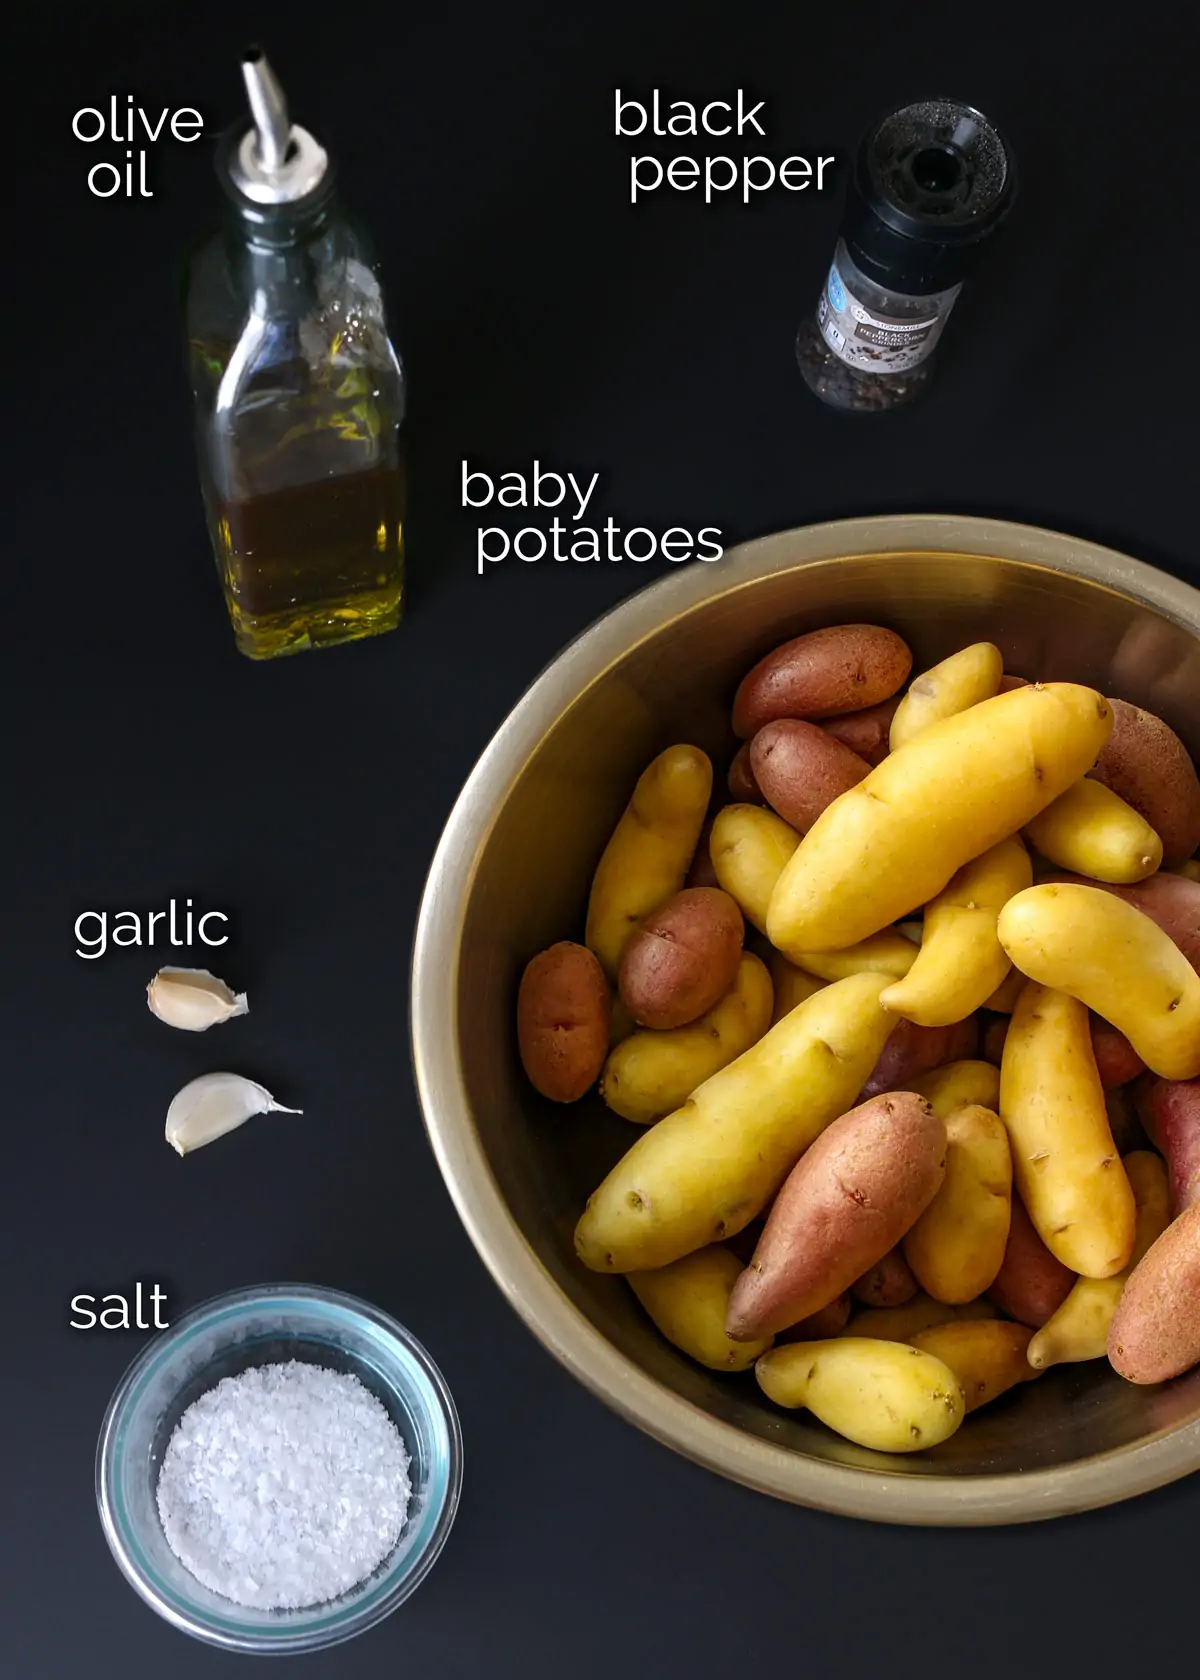 інгредієнти для приготування картоплі в повільній плиті, викладені на чорному прилавку.